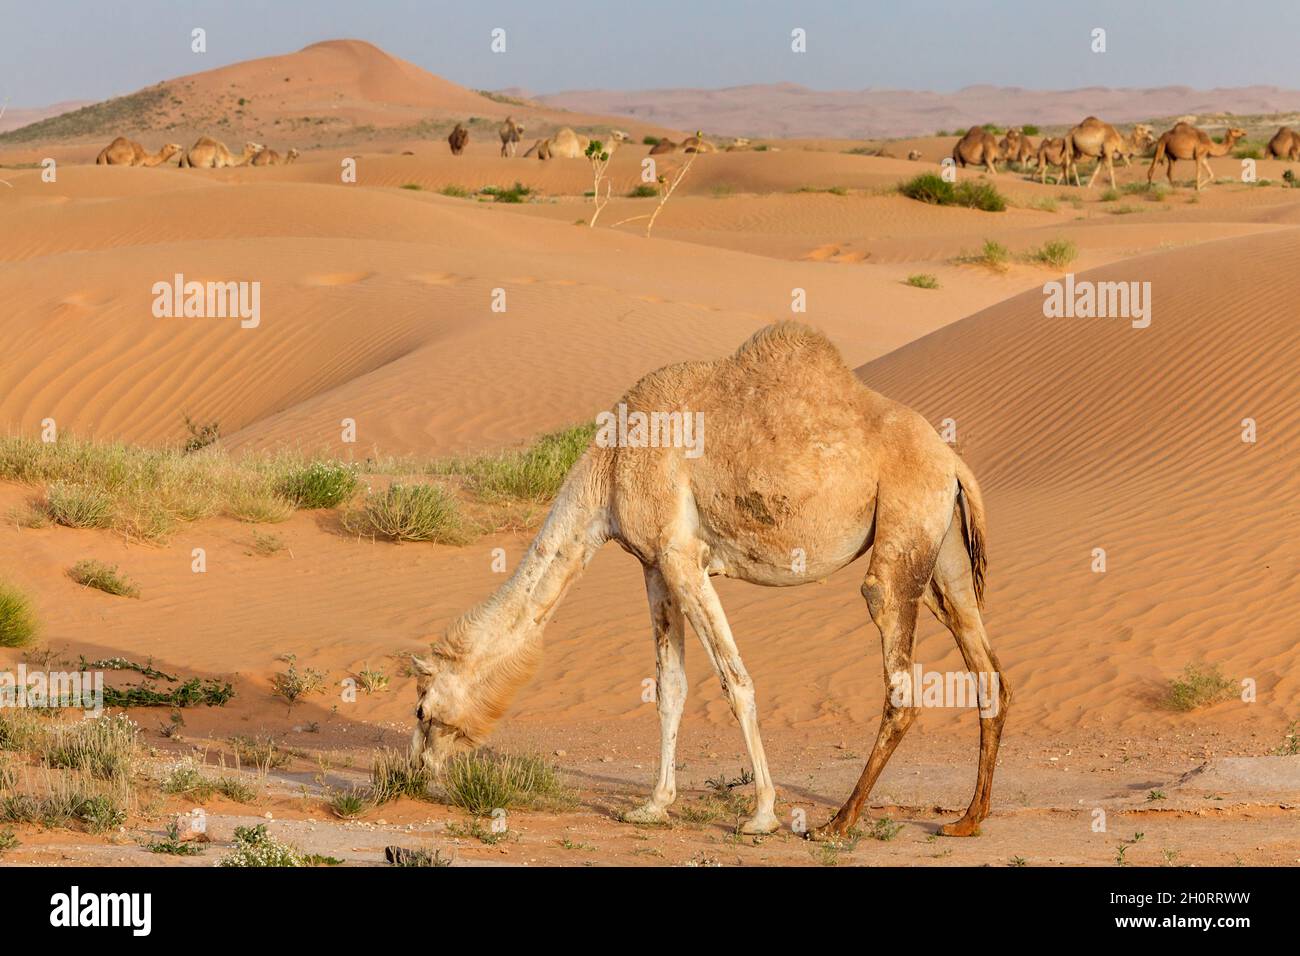 Lone camel grazing in the desert, Saudi Arabia Stock Photo